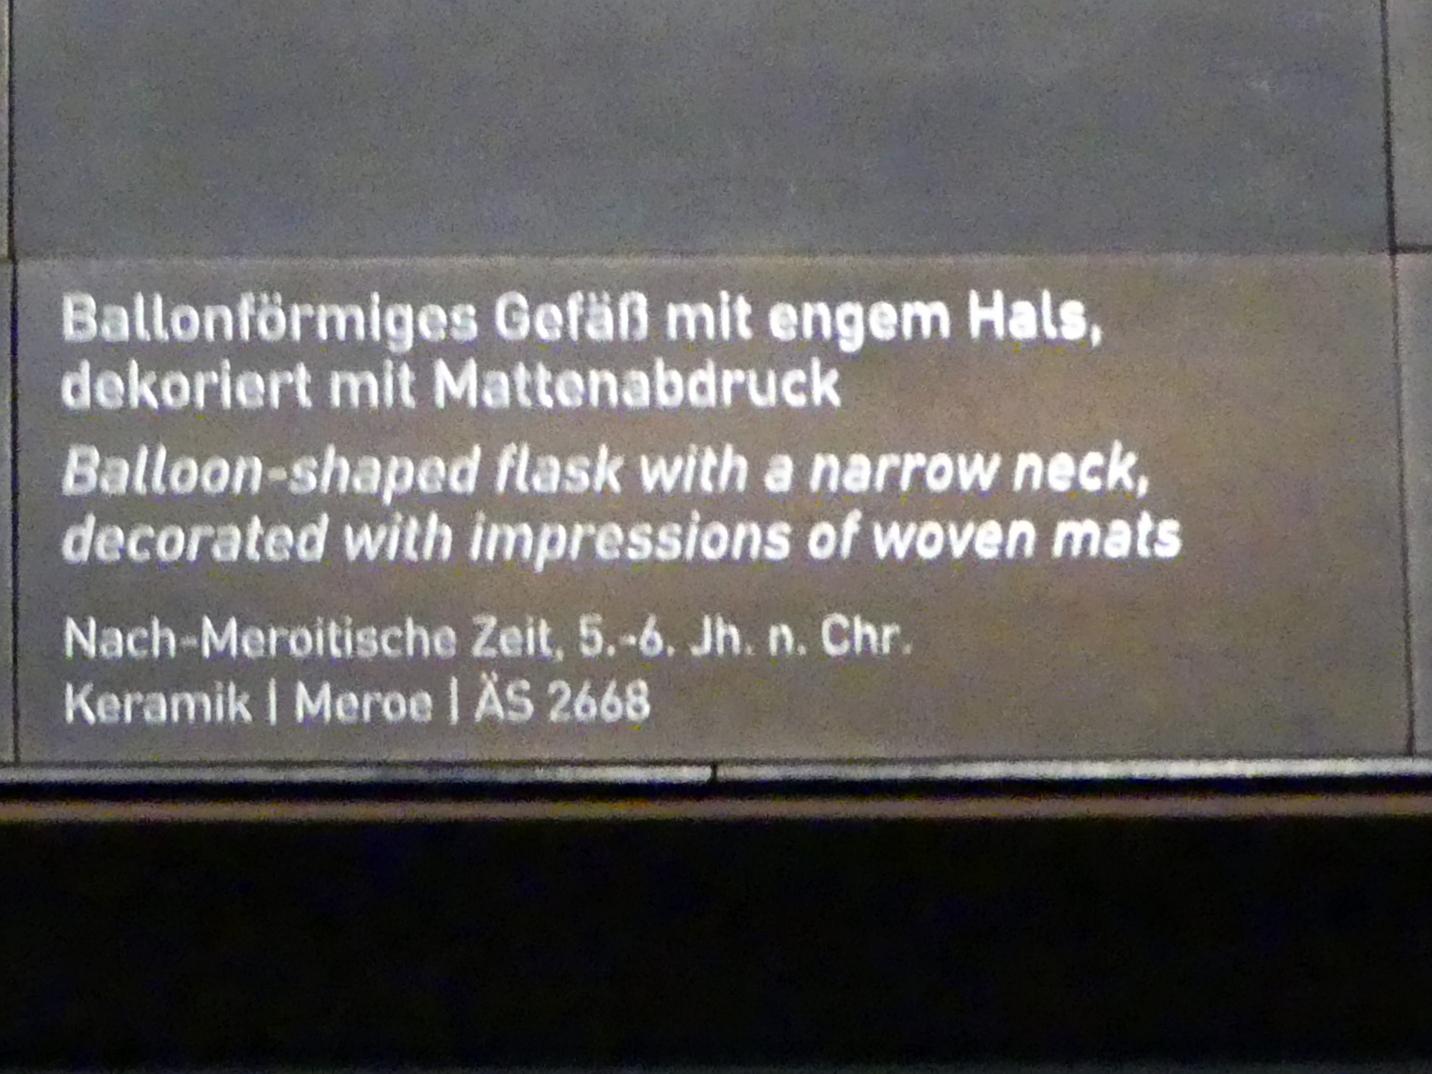 Ballonförmiges Gefäß mit engem Hals, dekoriert mit Mattenabdruck, Nachmeroitische Zeit, 400 - 700, 400 - 600, Bild 2/2